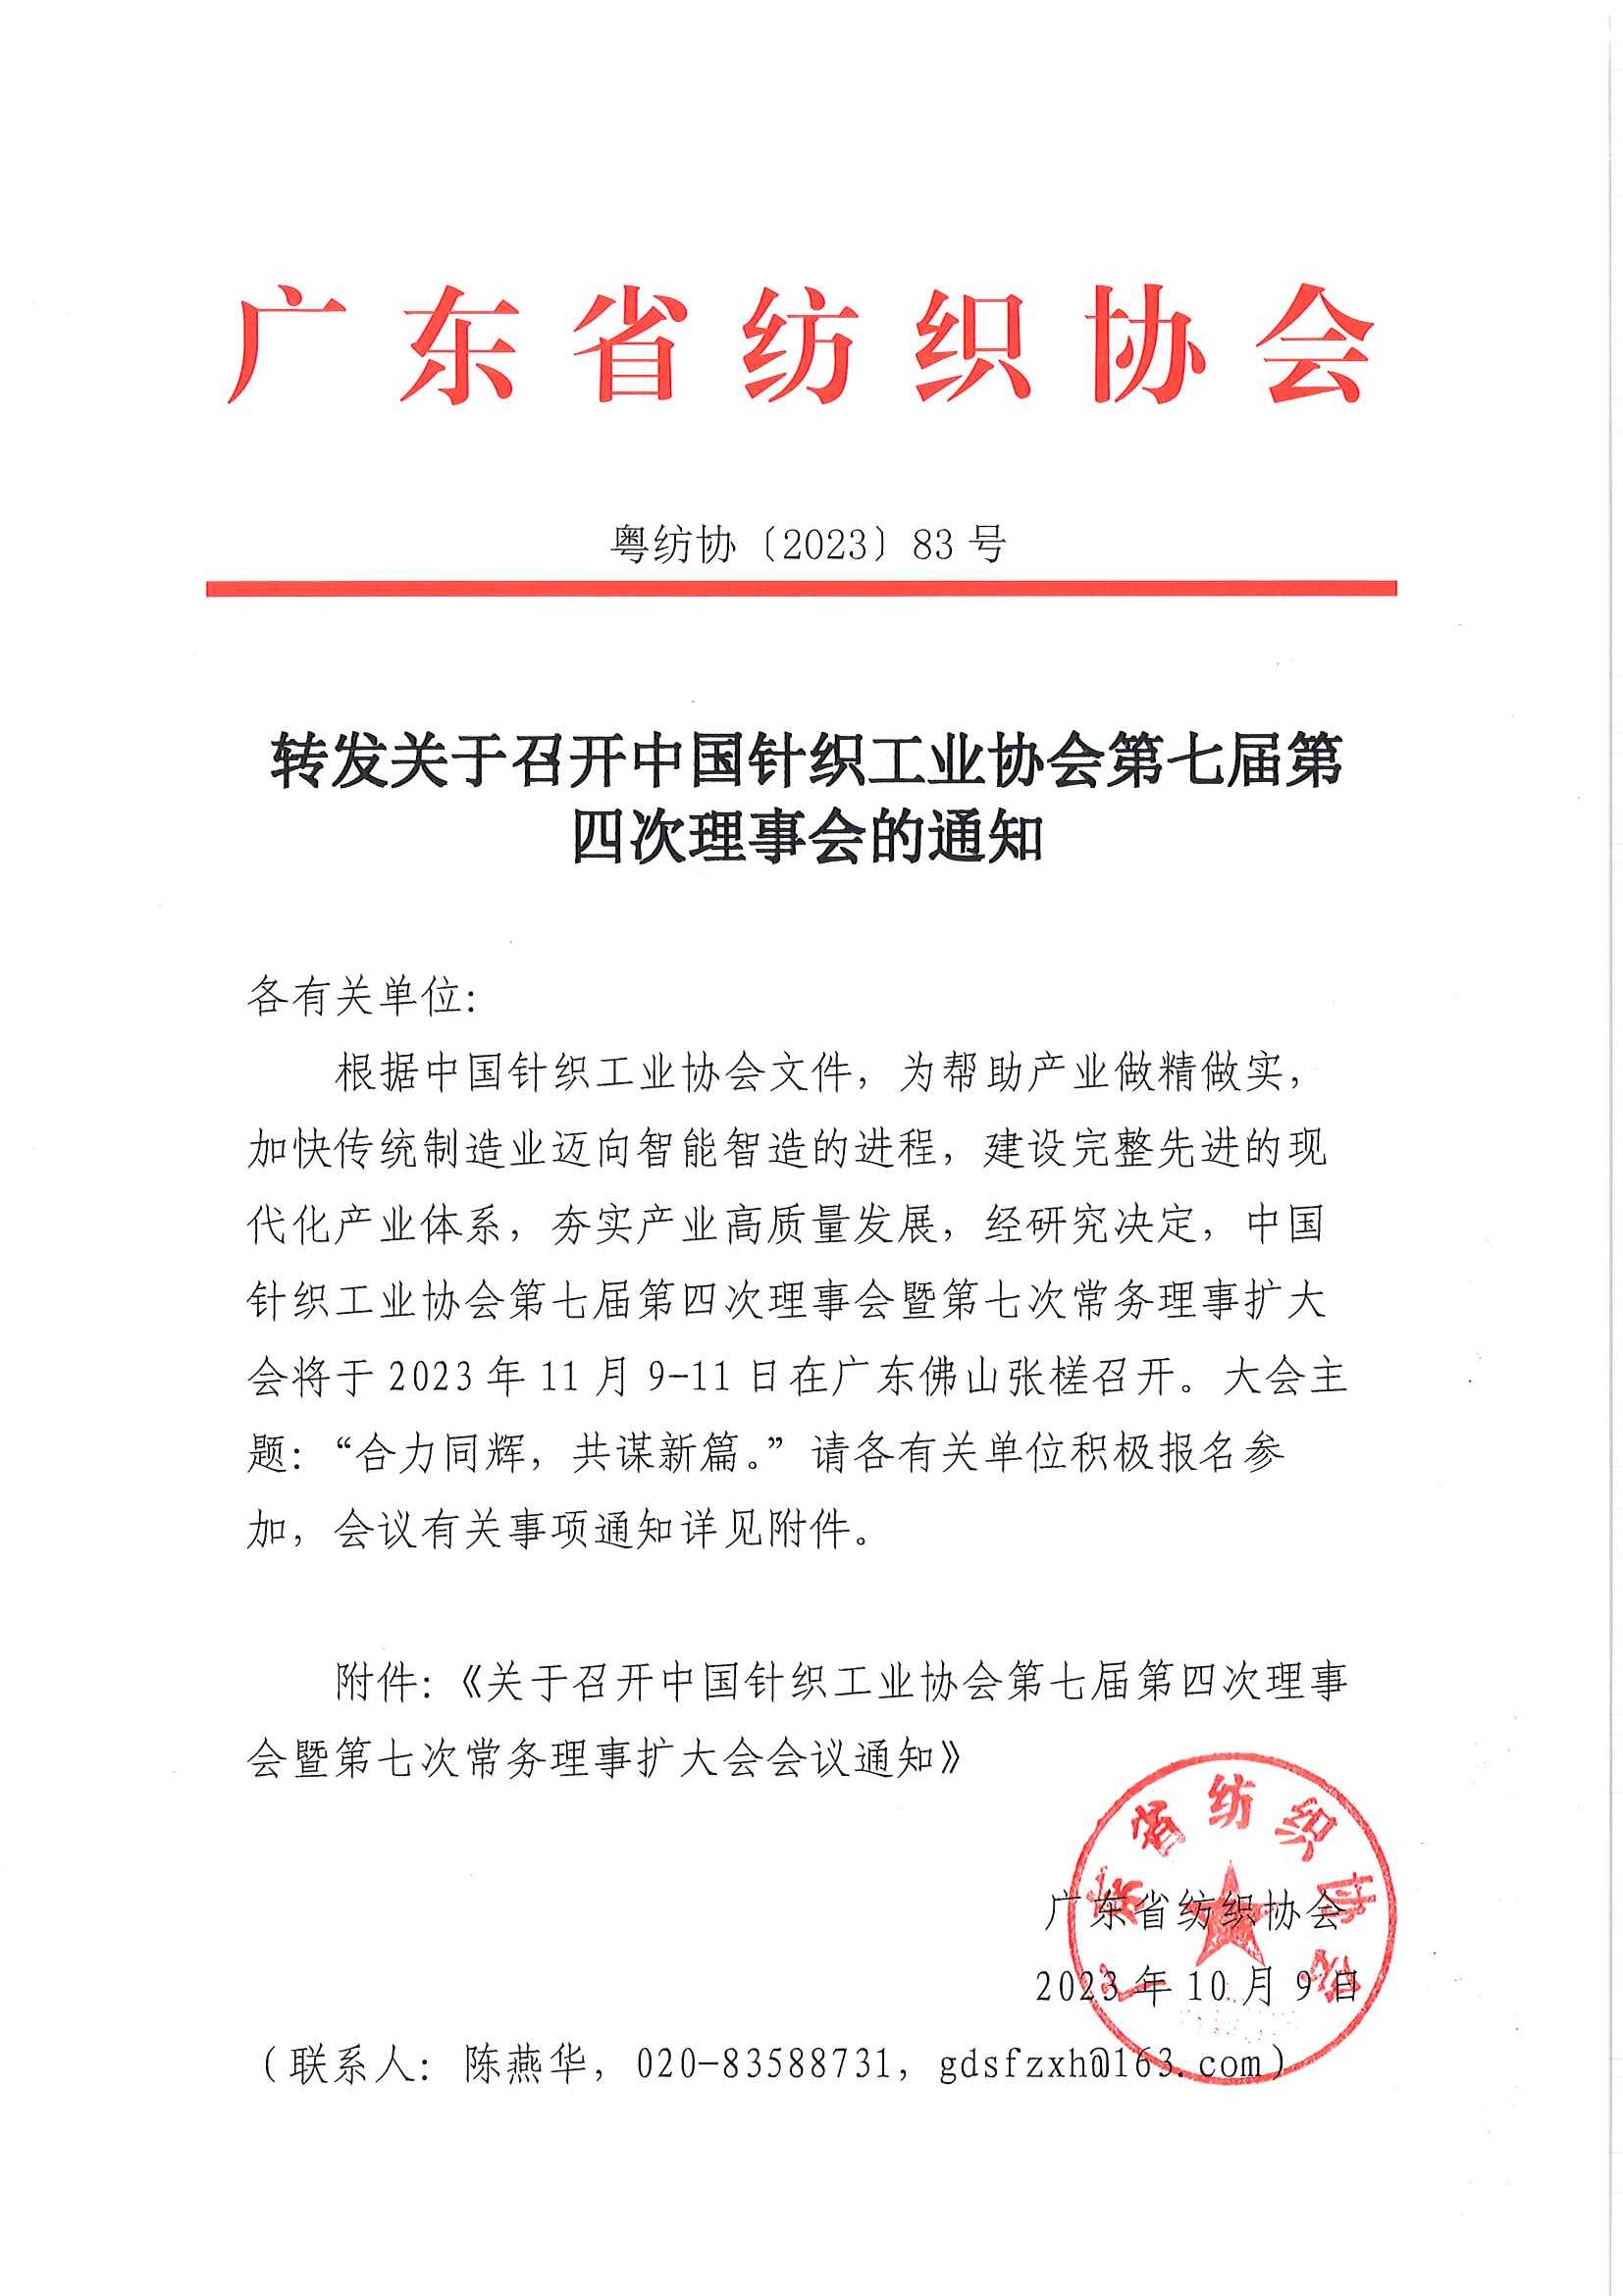 转发关于召开中国针织工业协会第七届第四次理事会的通知.jpg